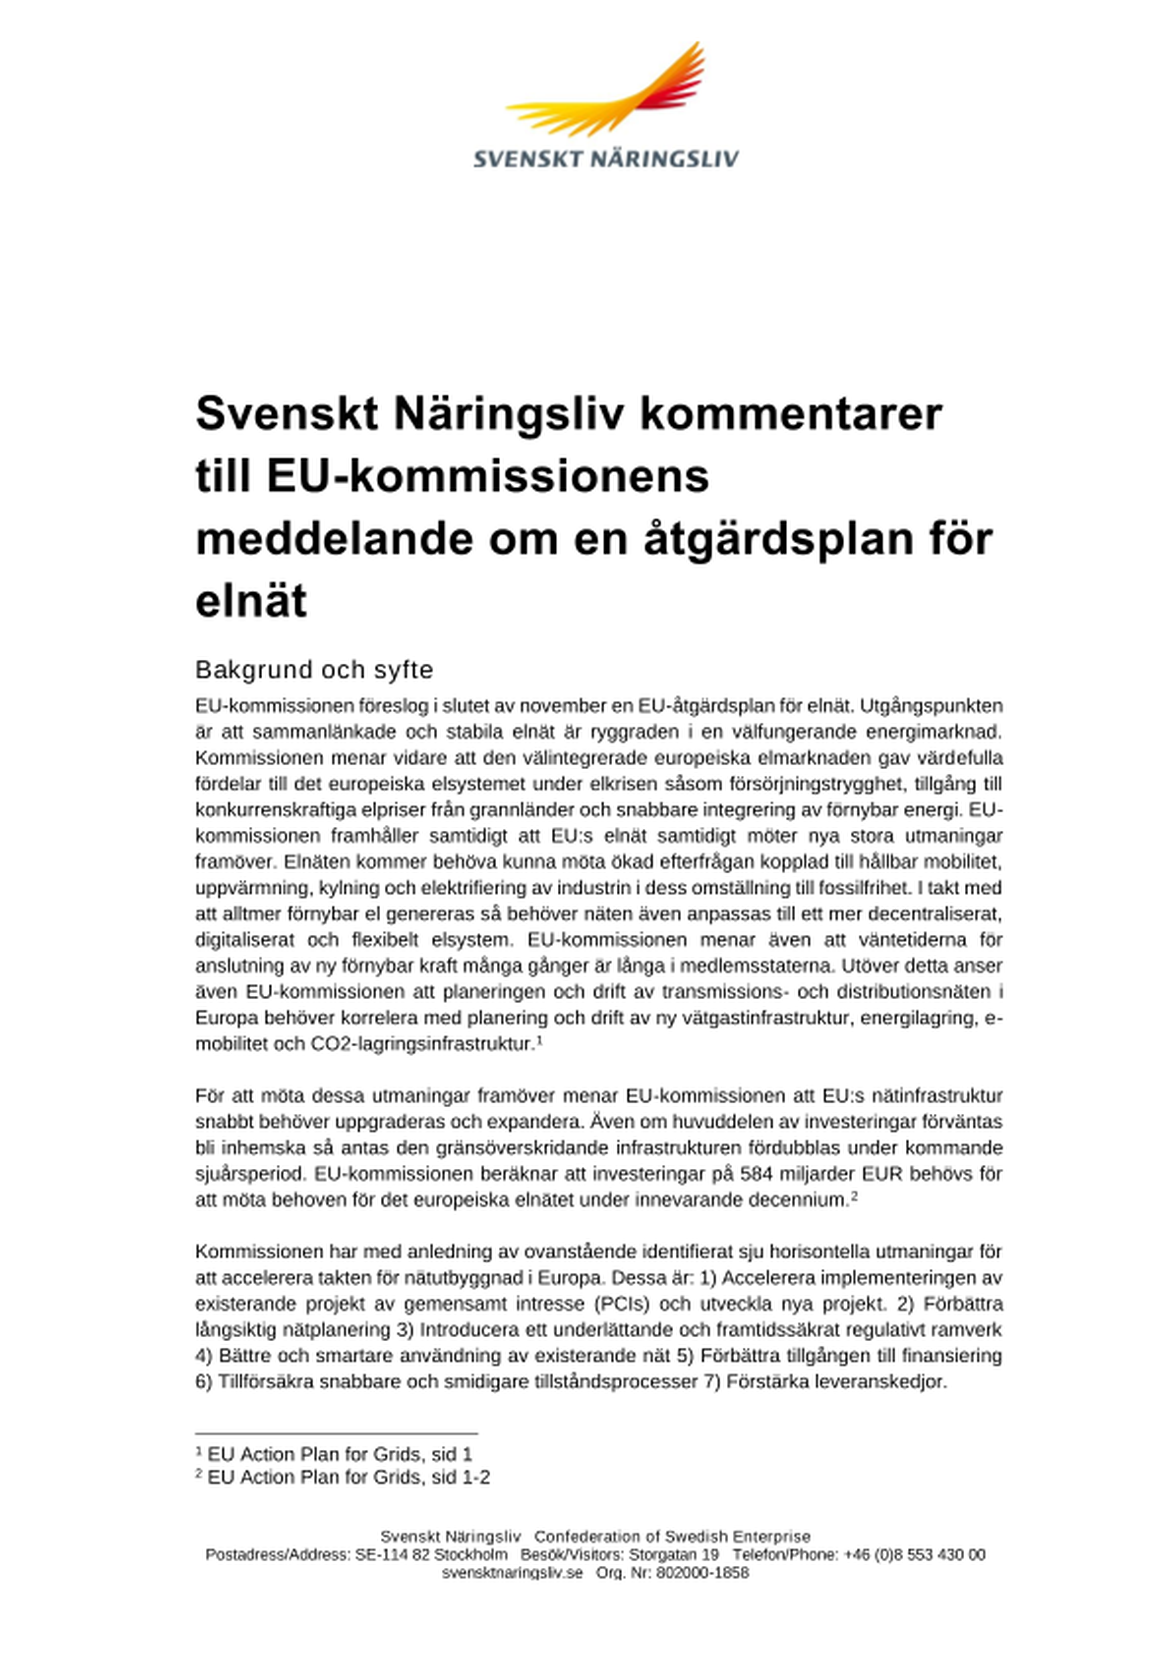 Svenskt Näringslivs kommentarer till EU-kommissionens åtgärdsplan för elnät  